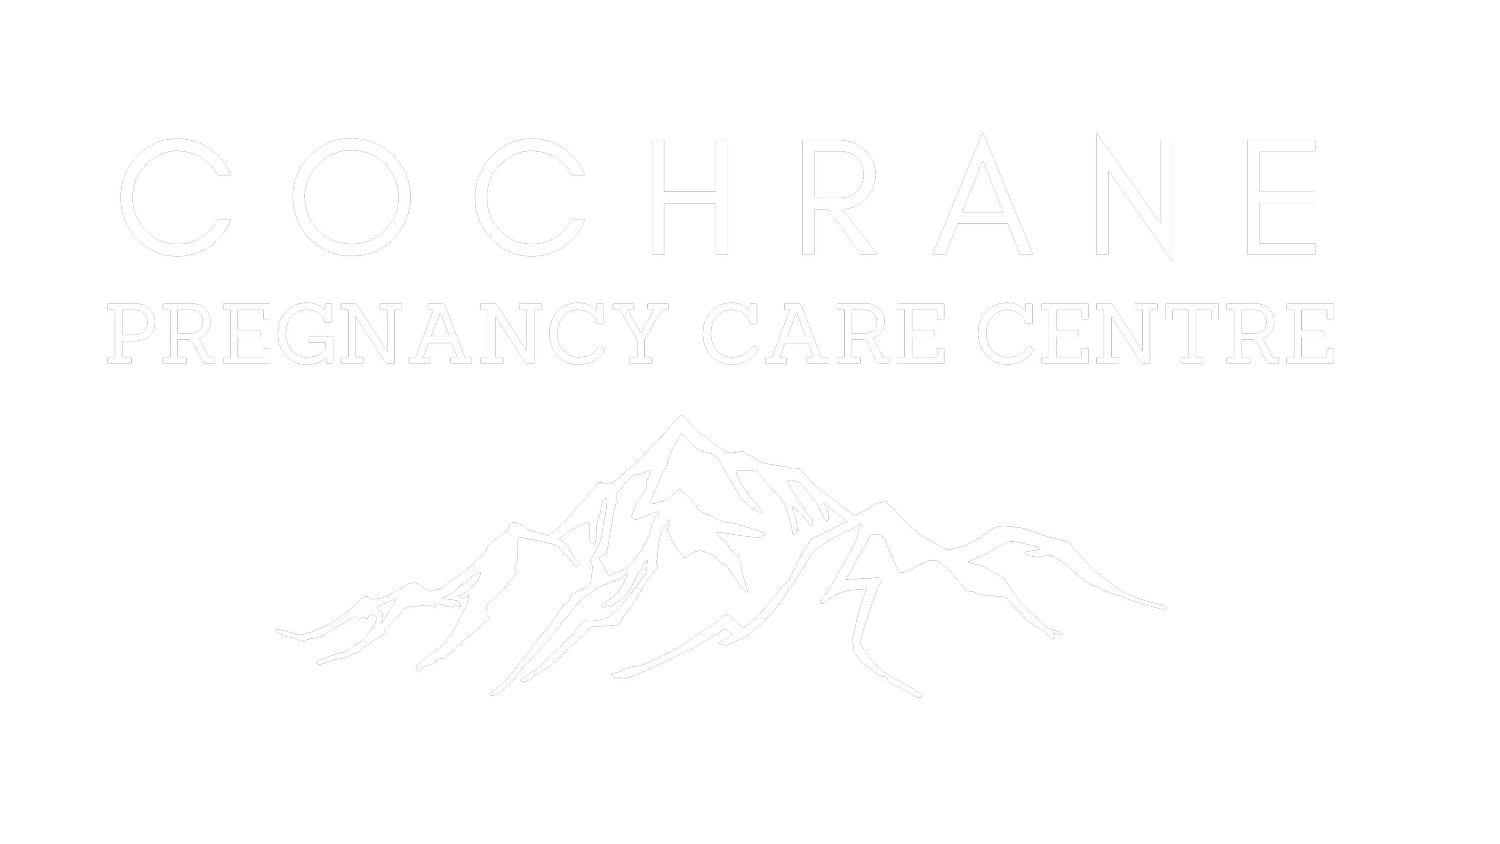 Cochrane Pregnancy Care Centre